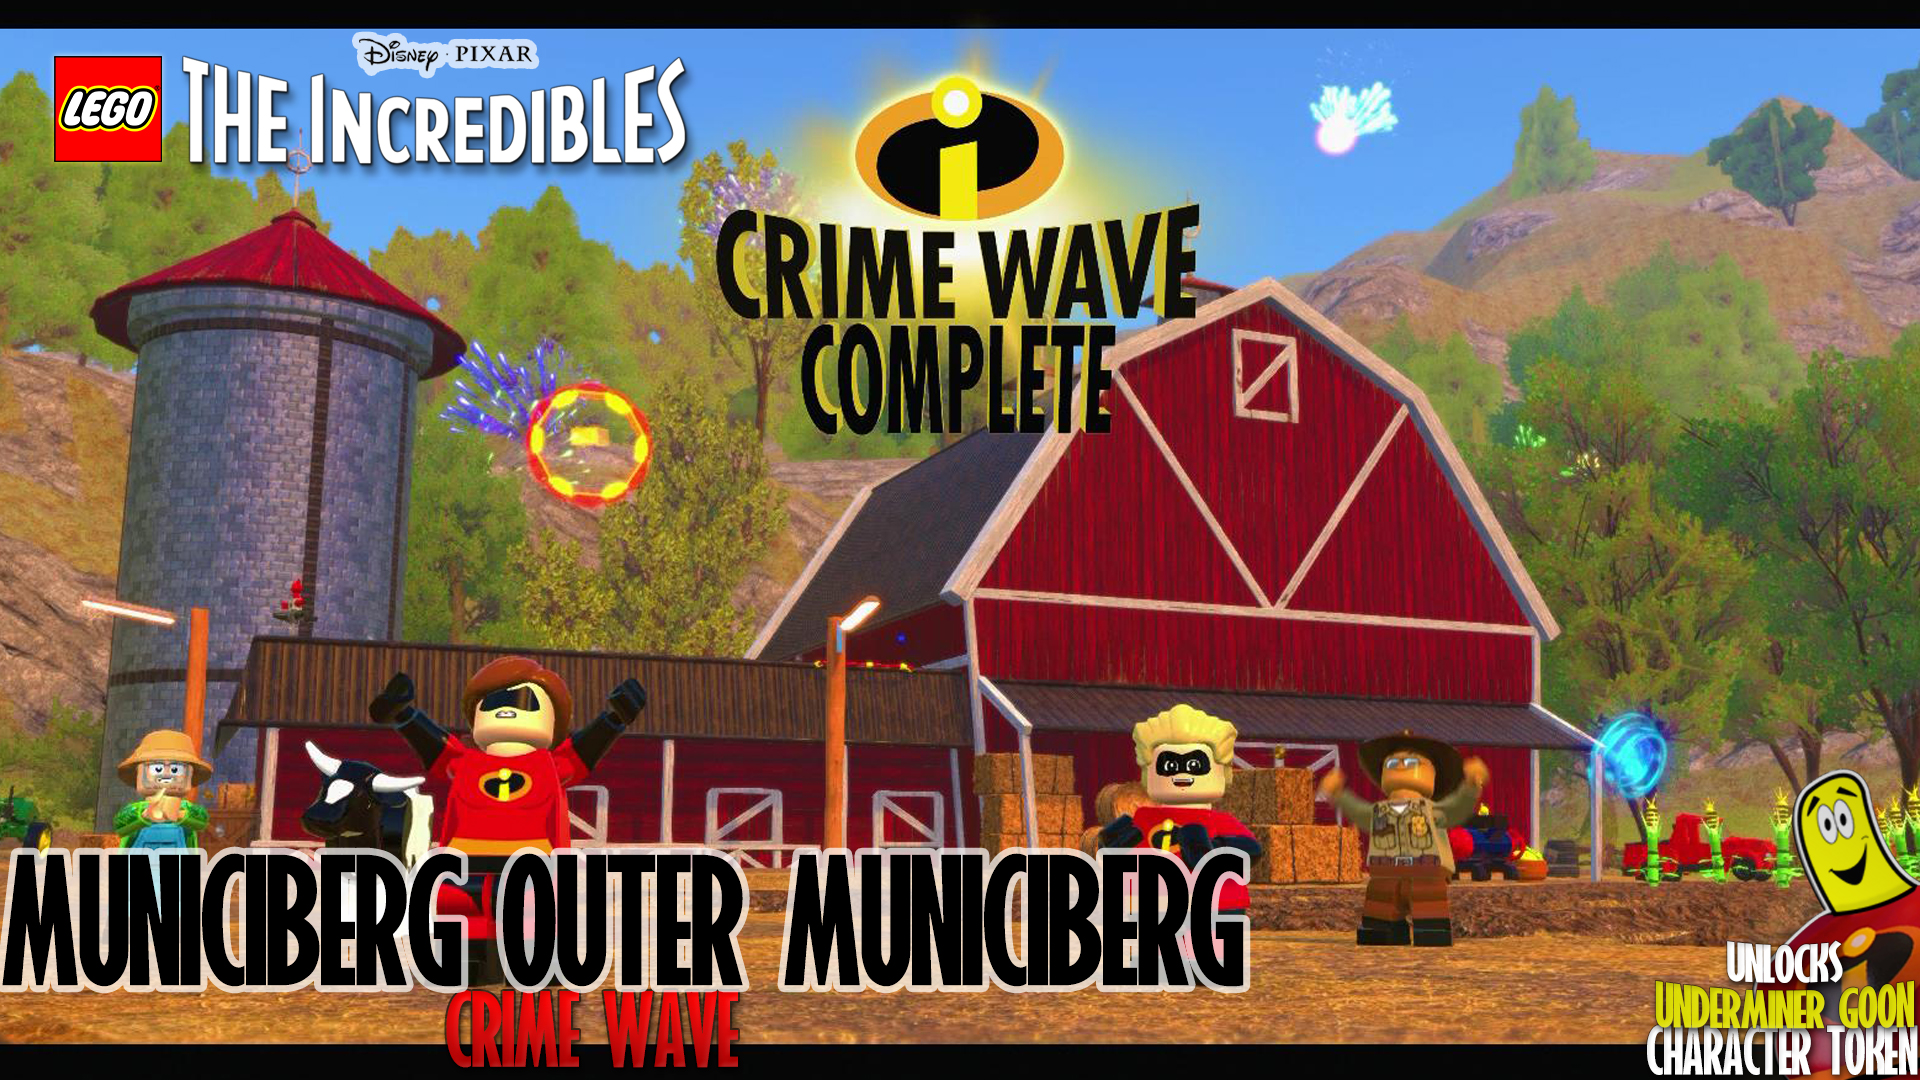 Lego The Incredibles: Municiberg / Outer Municiberg CRIME WAVE – HTG